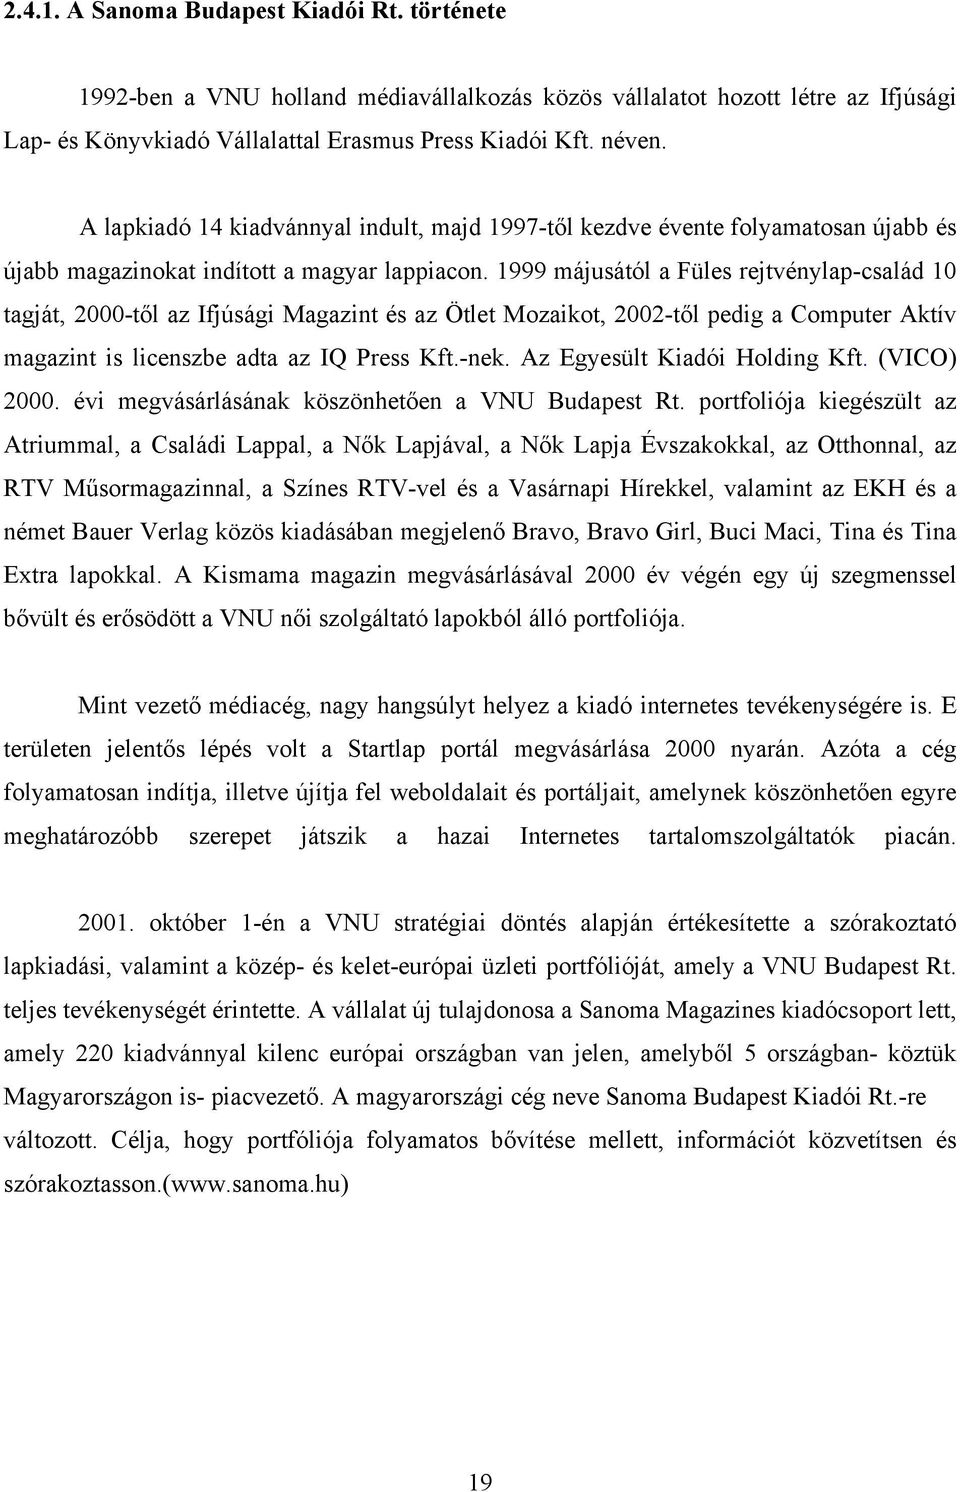 1999 májusától a Füles rejtvénylap-család 10 tagját, 2000-től az Ifjúsági Magazint és az Ötlet Mozaikot, 2002-től pedig a Computer Aktív magazint is licenszbe adta az IQ Press Kft.-nek.